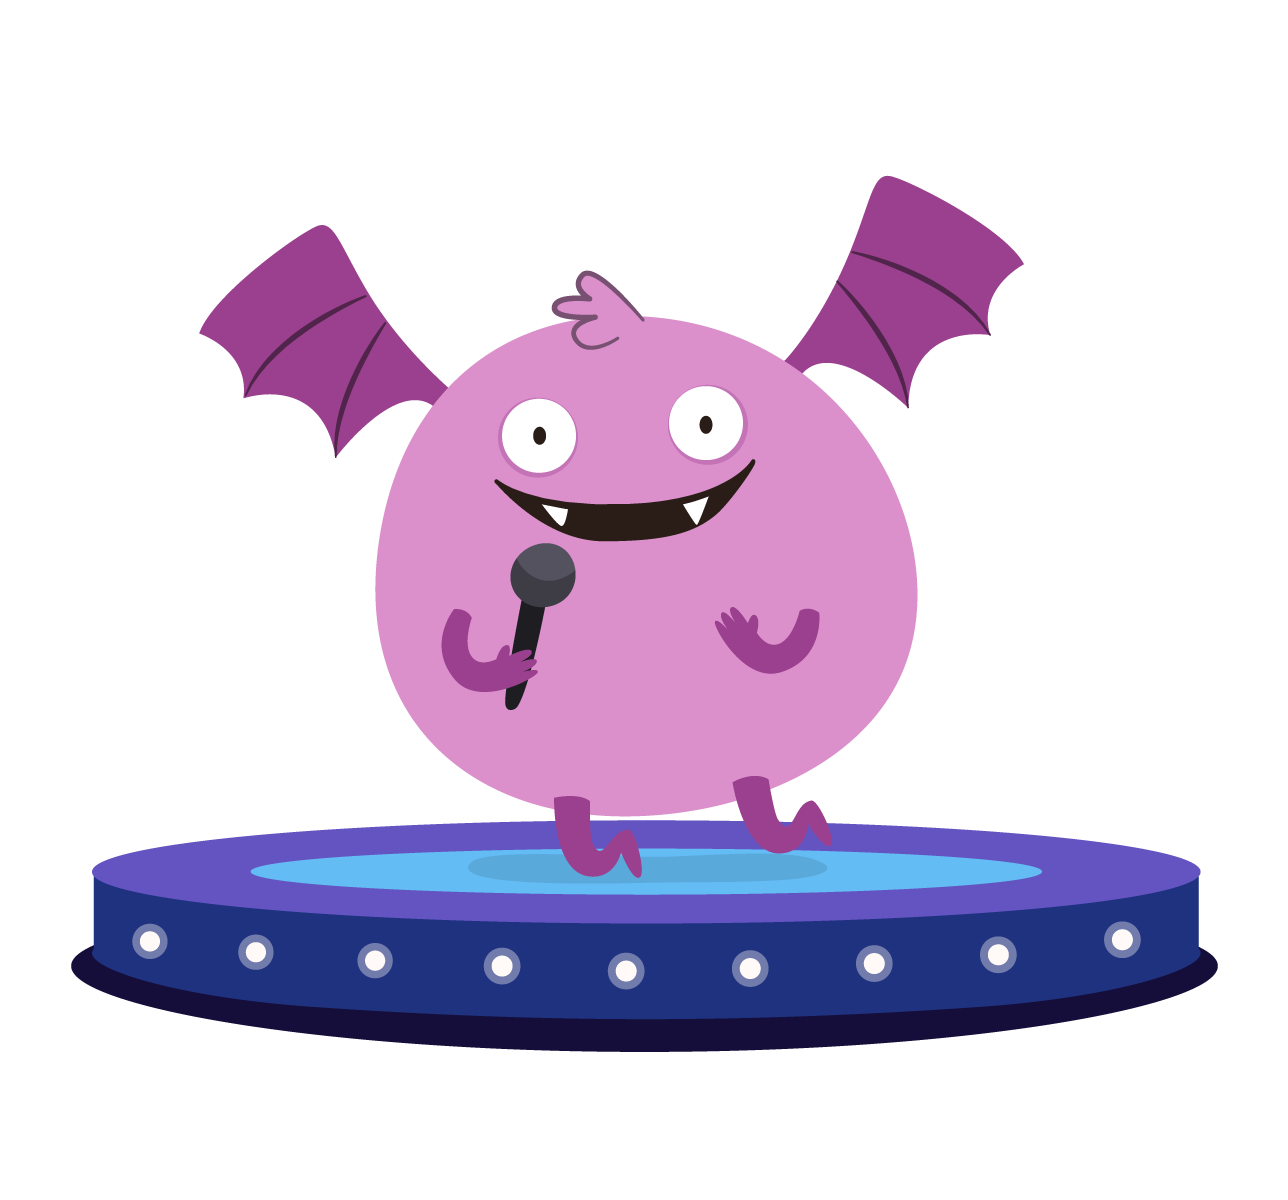 Cute monster singing with songs from KidsBeeTV app